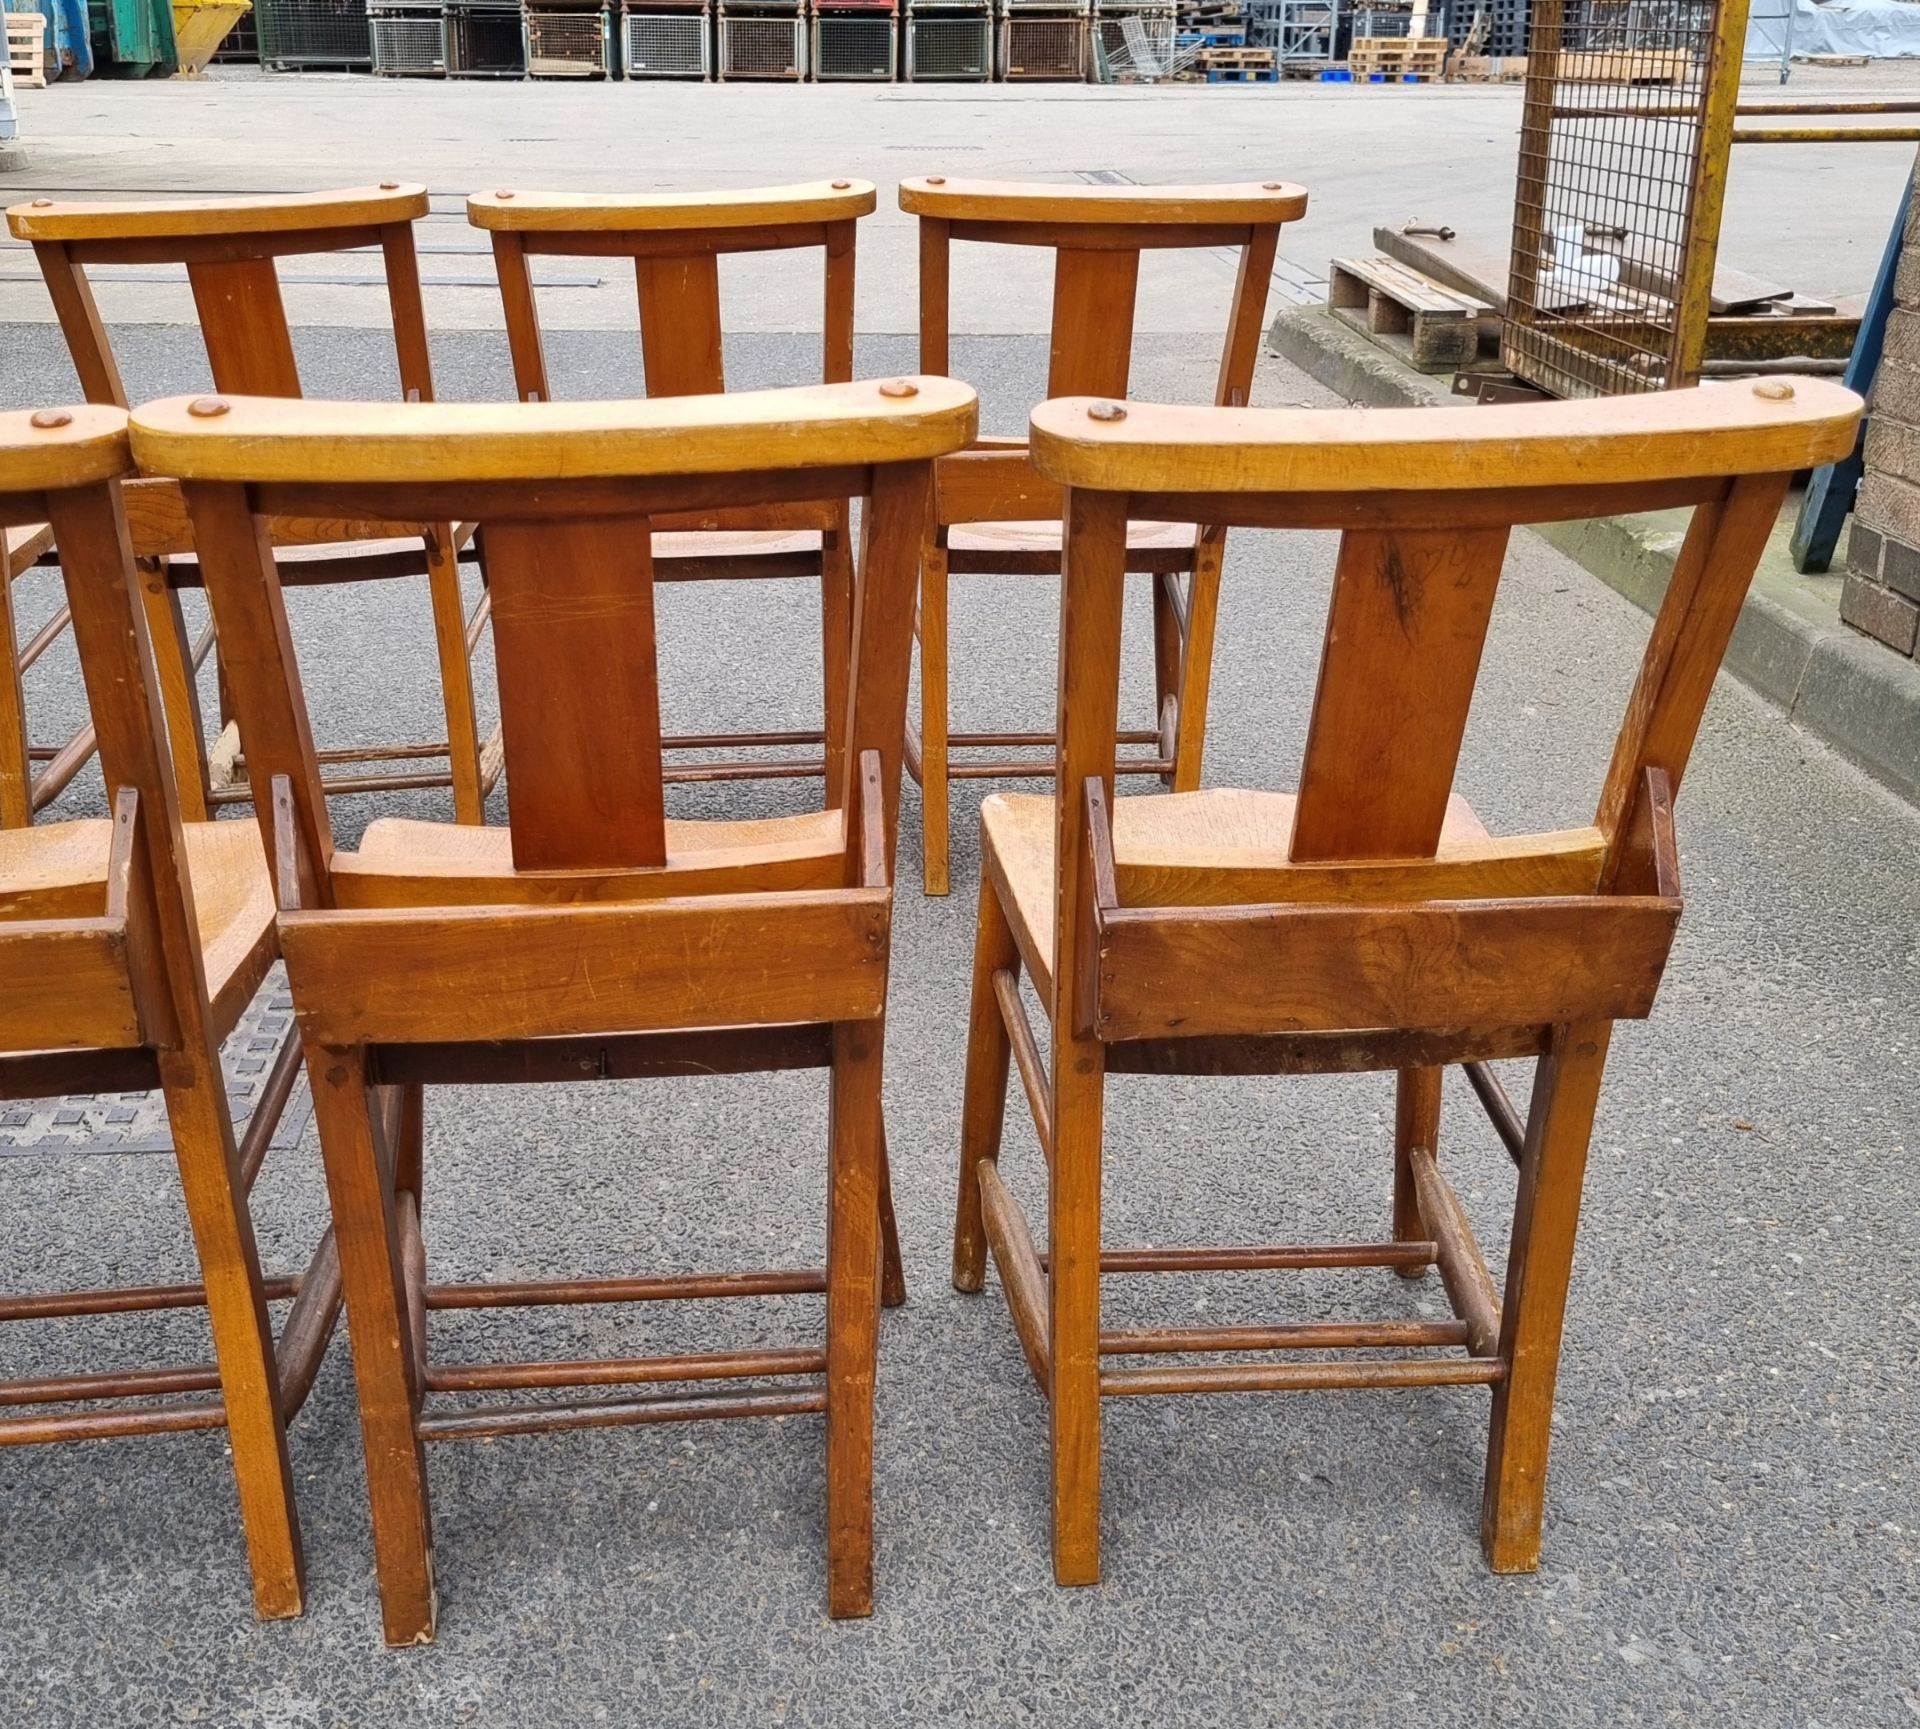 12x Wooden chairs with rear book holder - L 420 x W 420 x H 820mm - Bild 6 aus 10